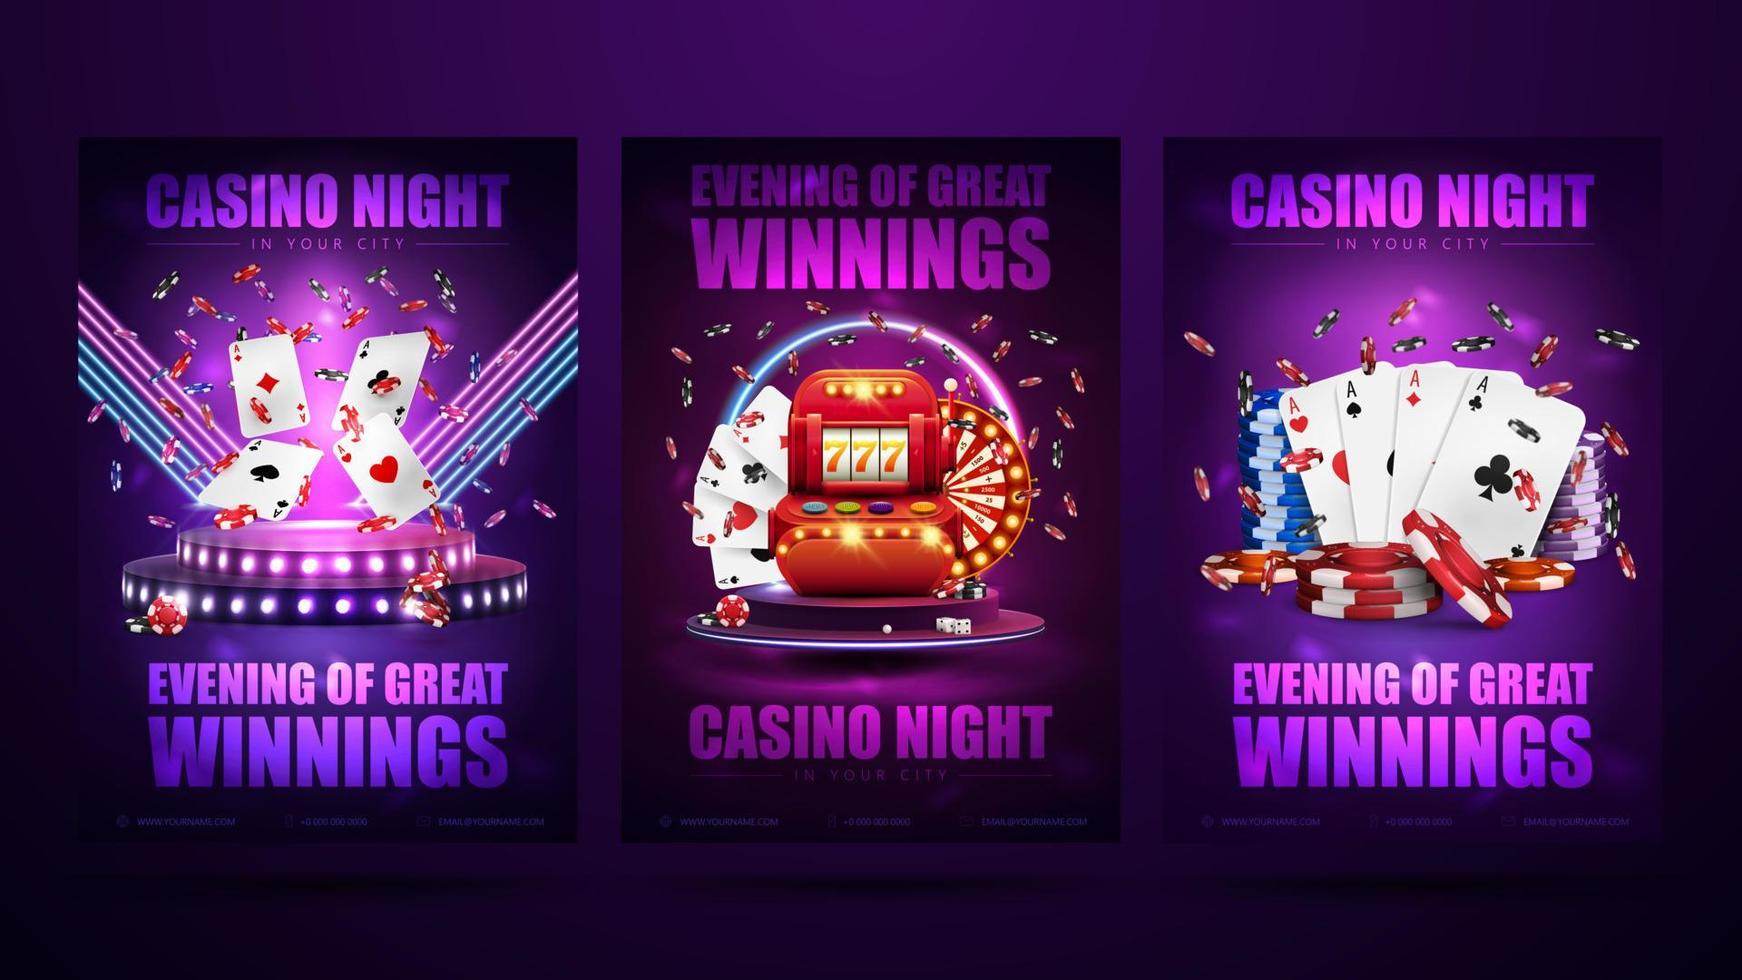 affischer med podium med röd spelautomat, spelkort och pokermarker. casino natt, uppsättning inbjudningsaffischer med neon casinoelement. vektor